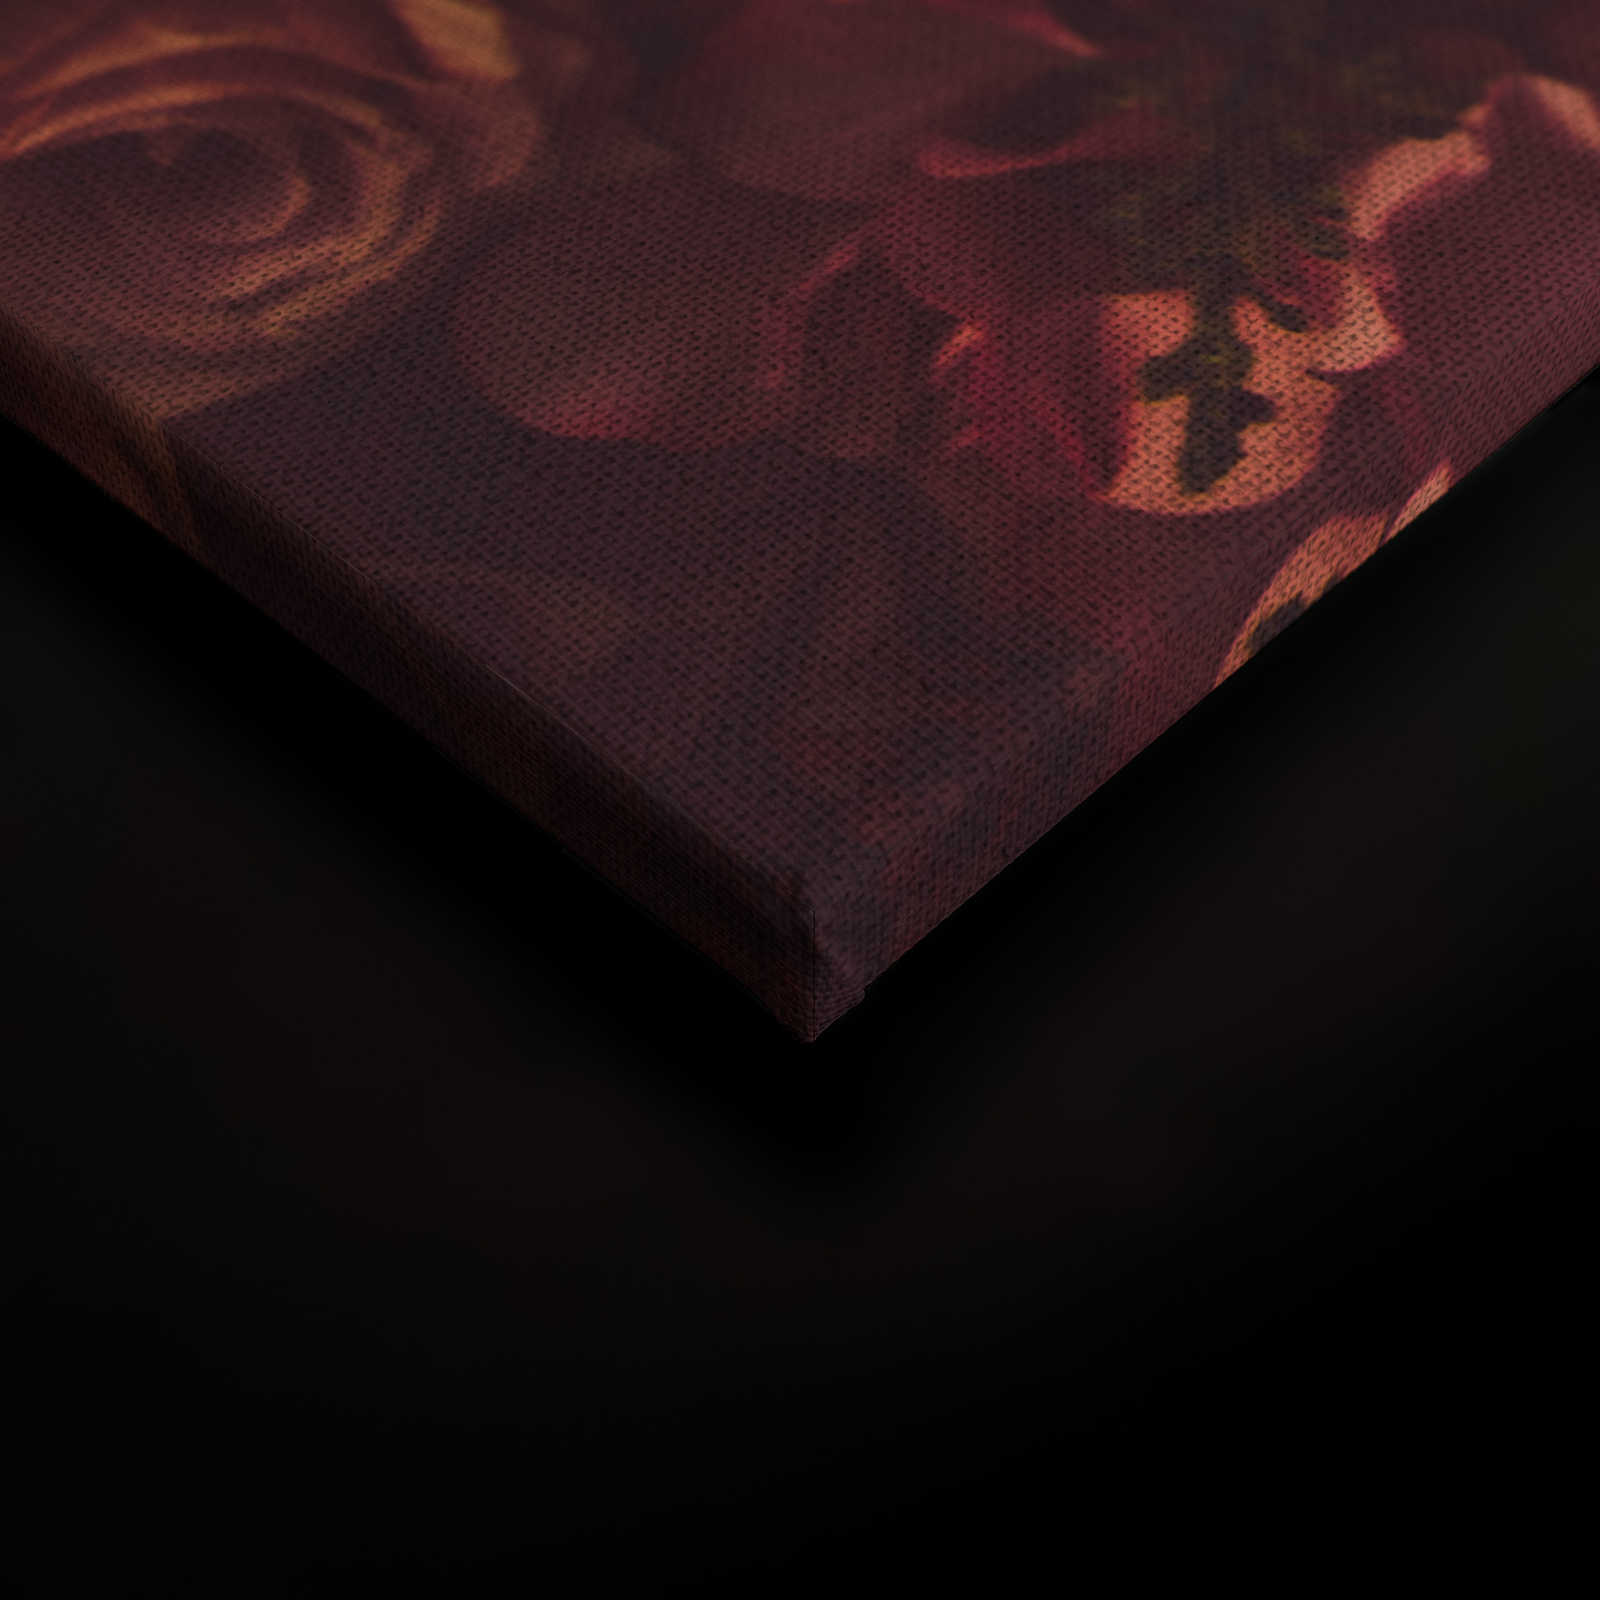             Toile avec motif de roses romantiques aspect lin - 0,90 m x 0,60 m
        